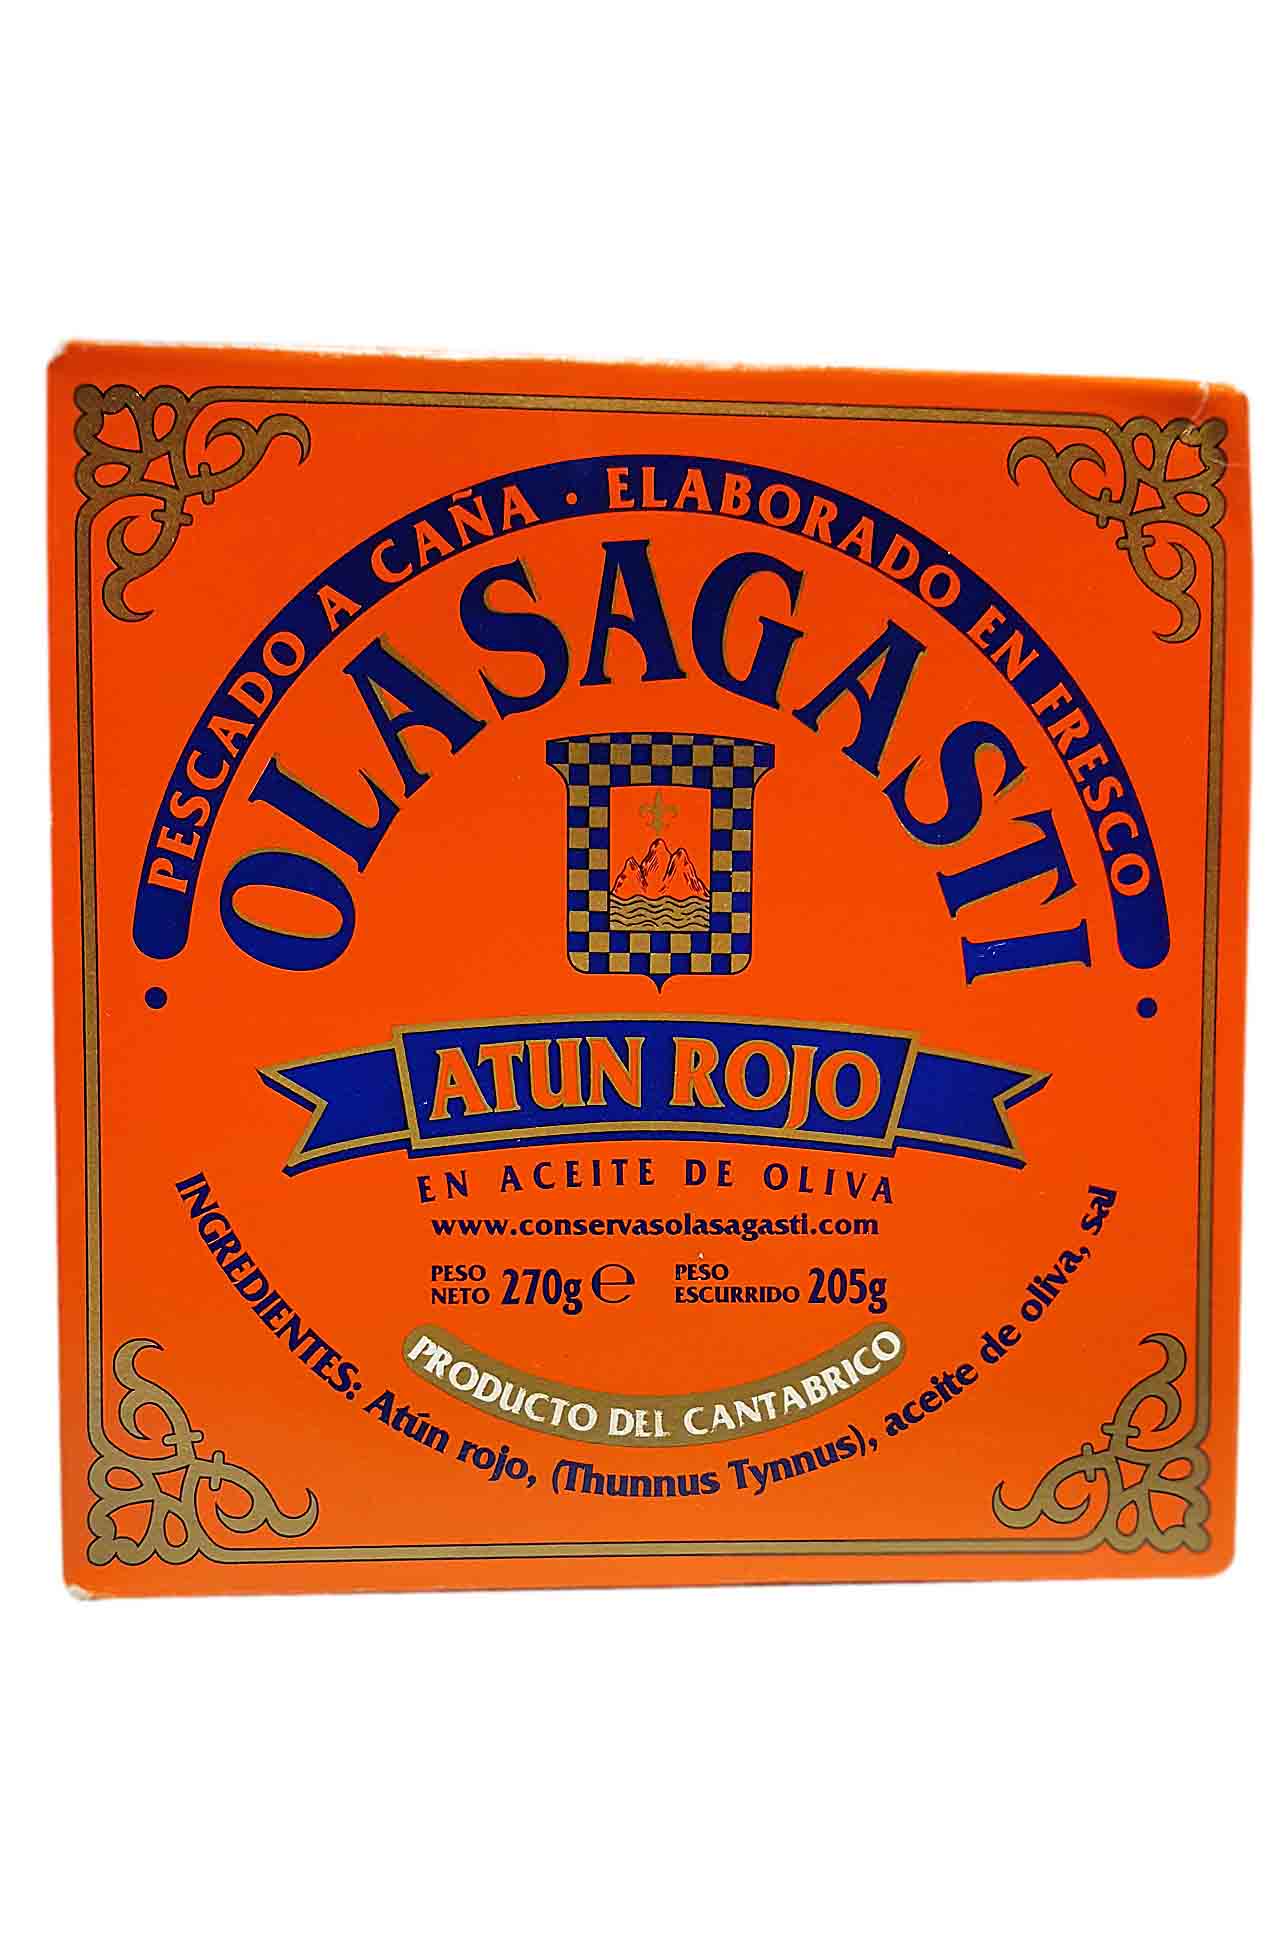 Olasagasti CP72-Tunna red in olive oil